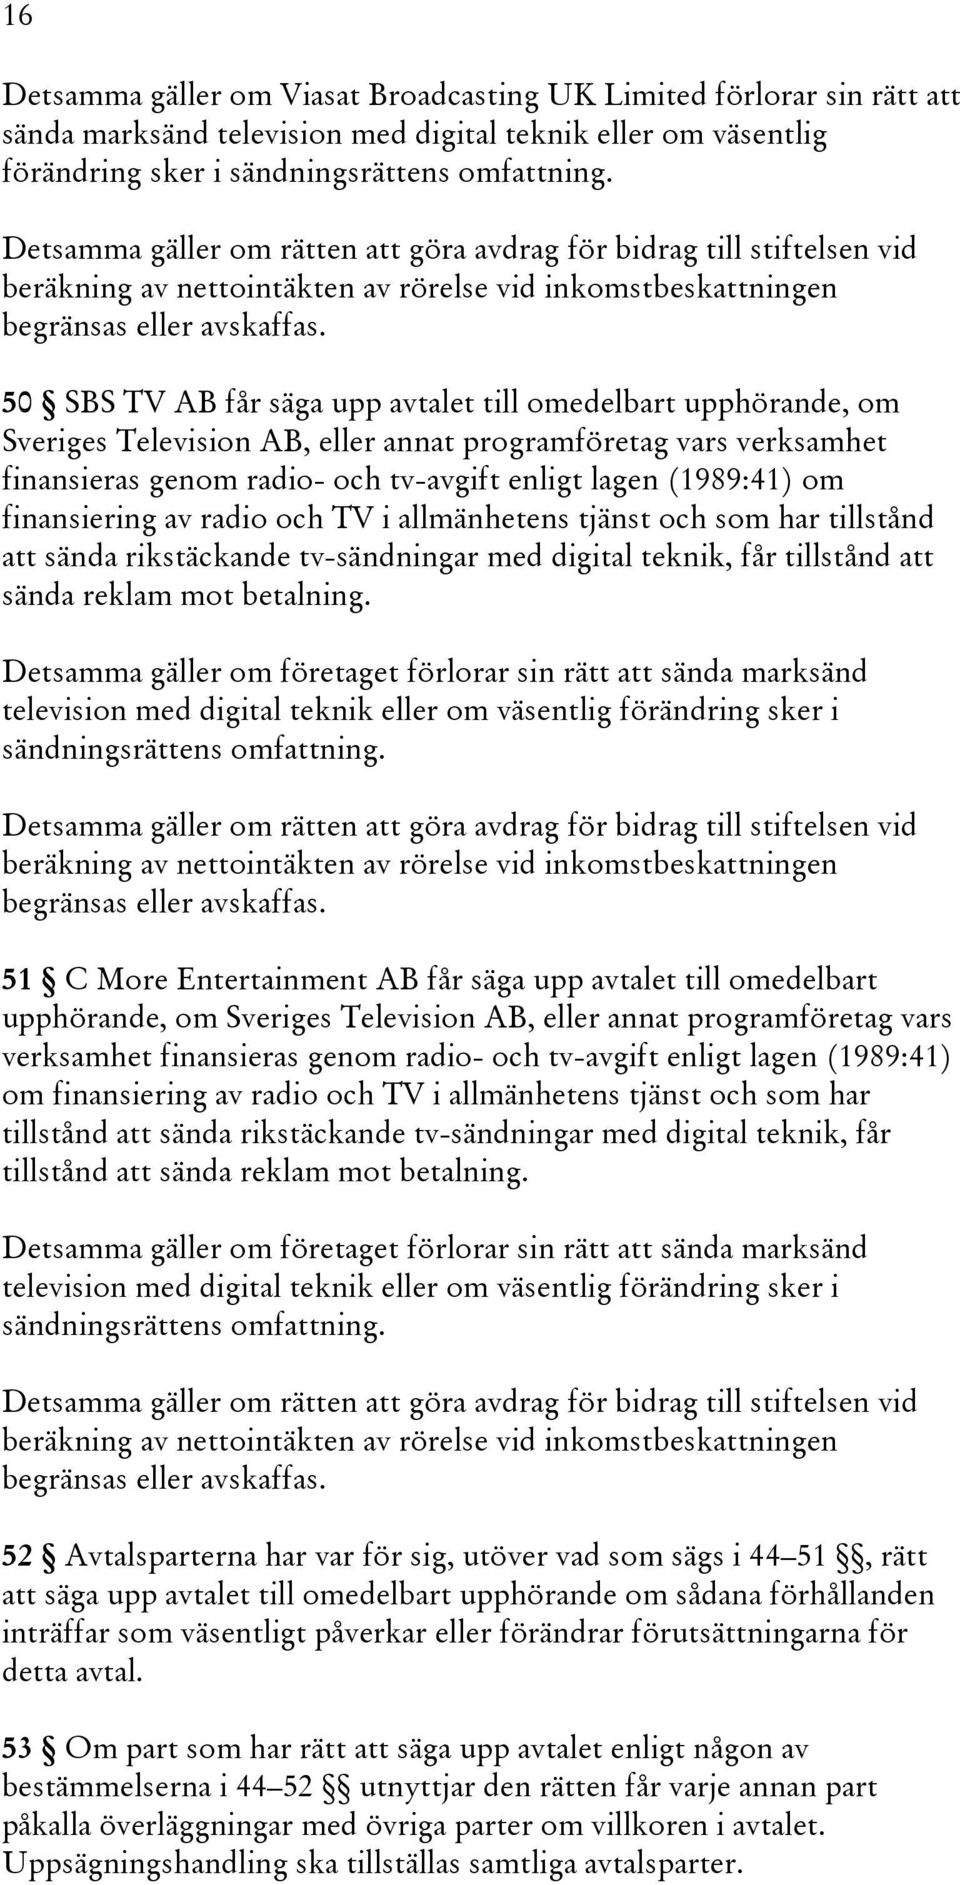 50 SBS TV AB får säga upp avtalet till omedelbart upphörande, om Sveriges Television AB, eller annat programföretag vars verksamhet finansieras genom radio- och tv-avgift enligt lagen (1989:41) om